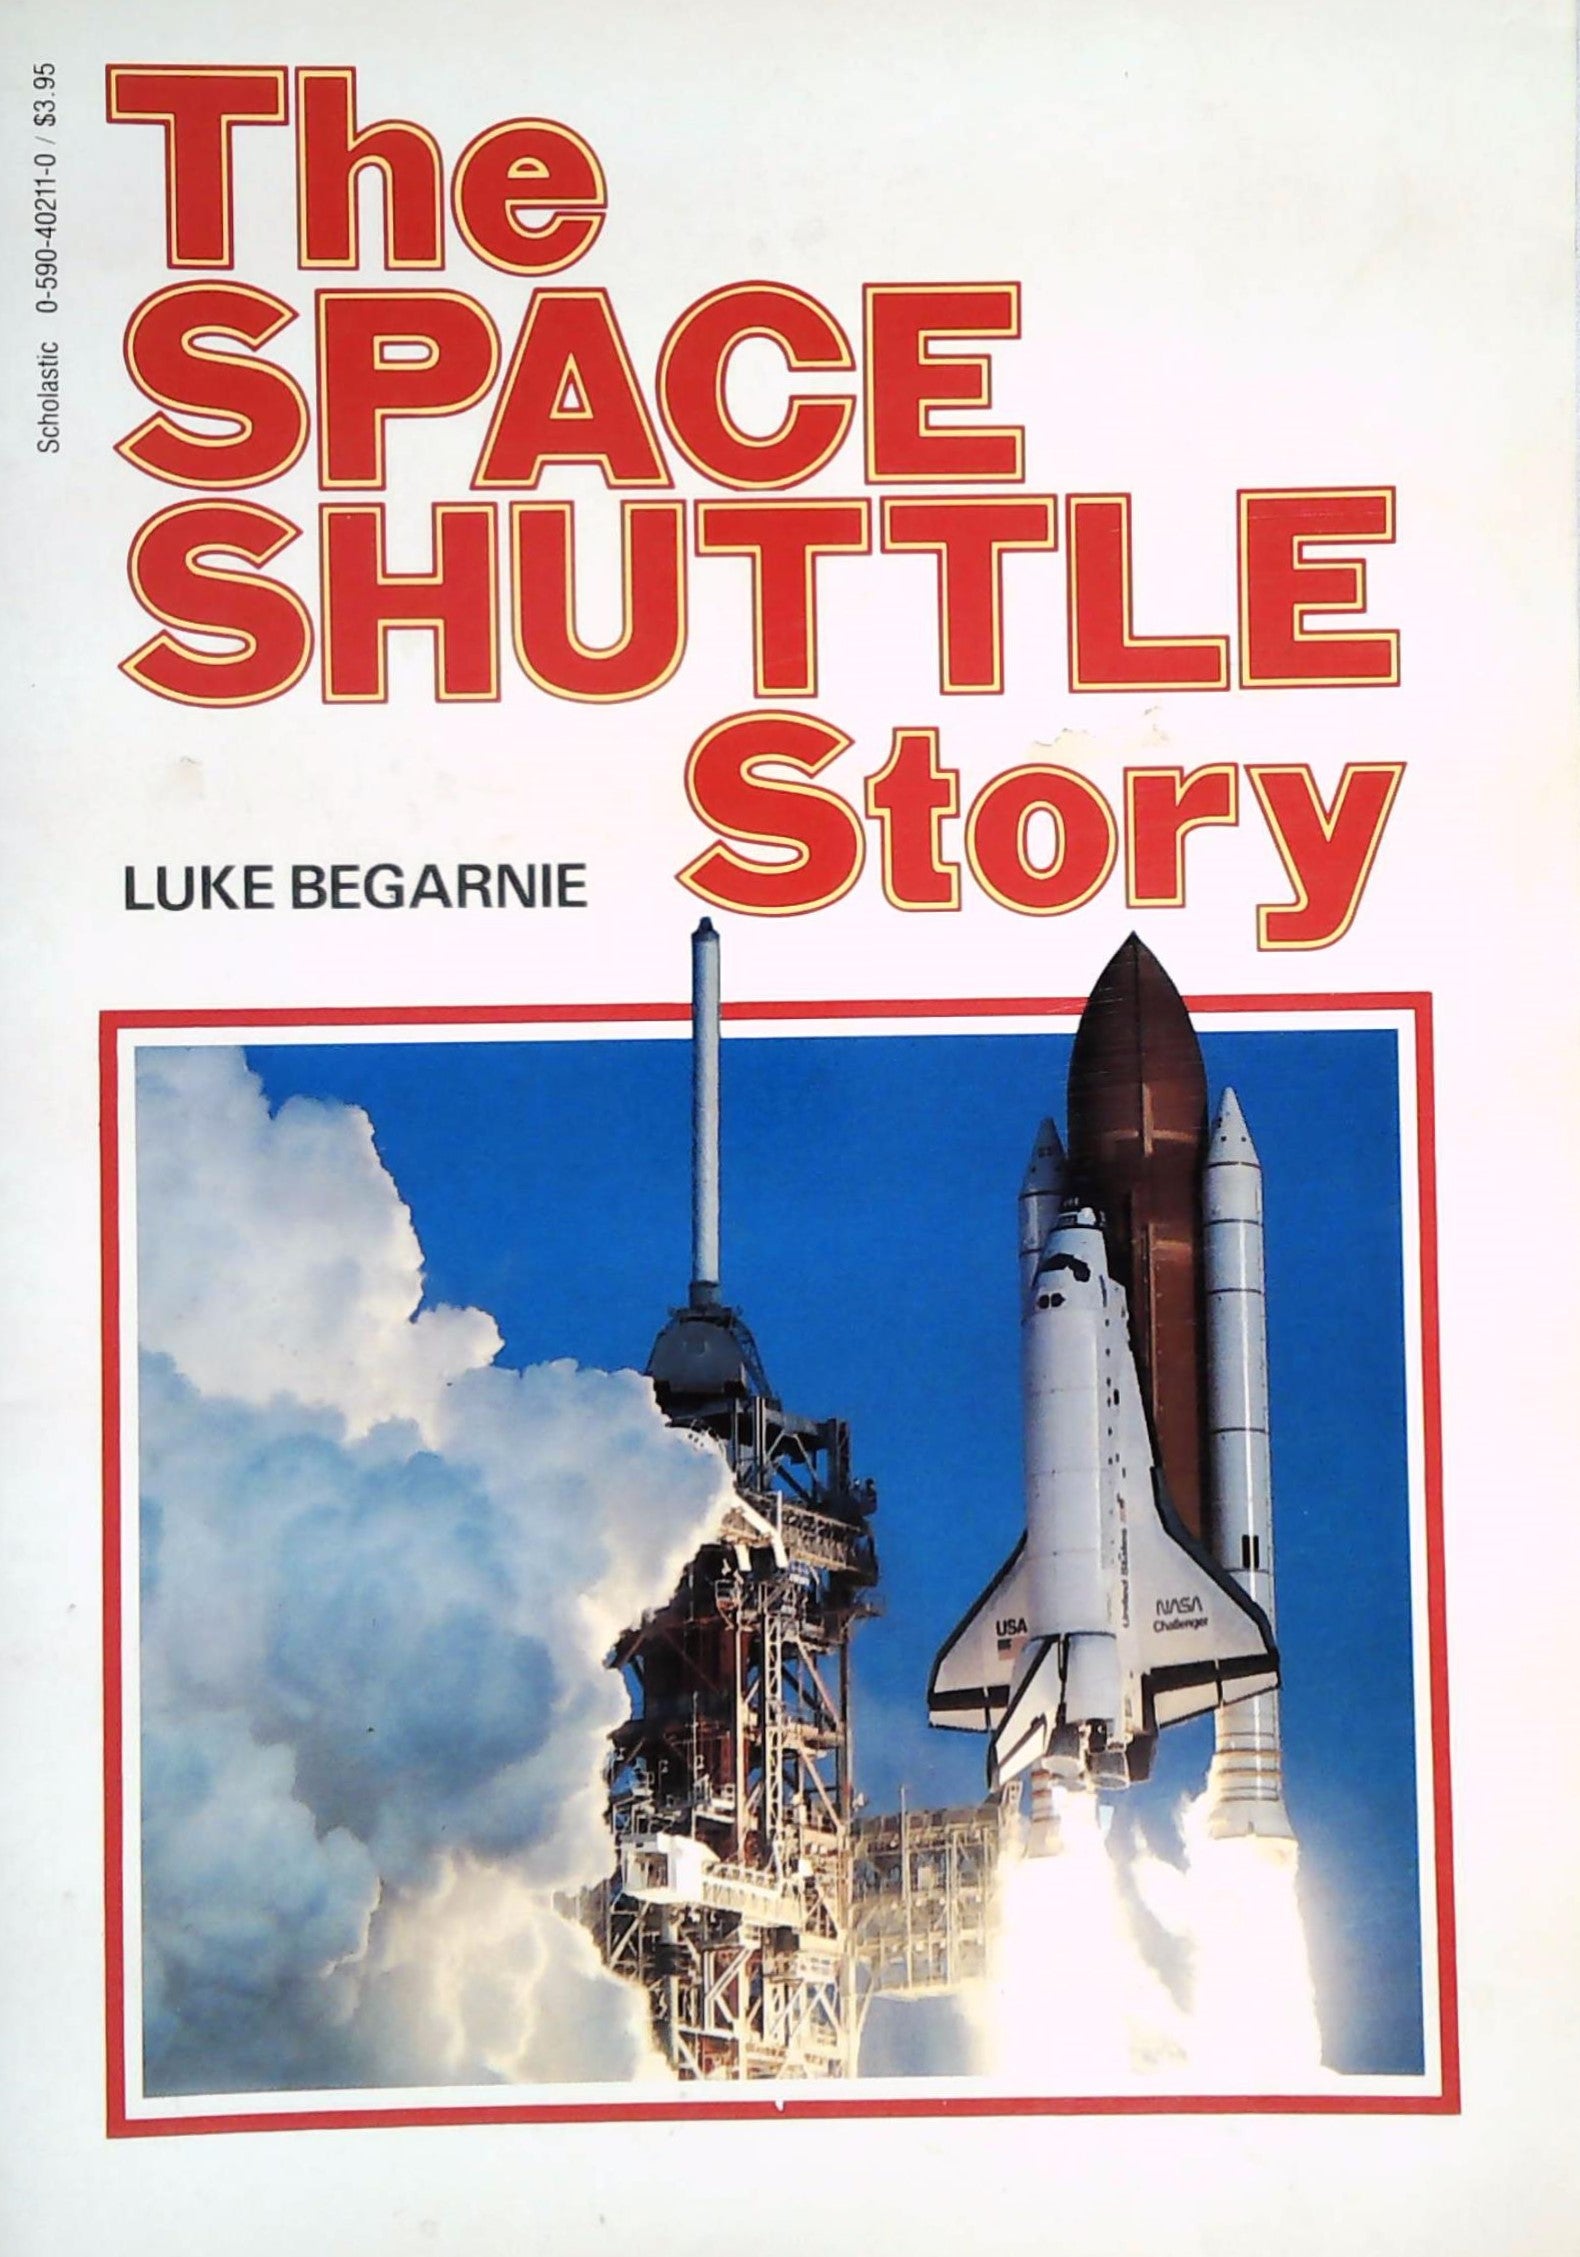 Livre ISBN 0590402110 The Space Shuttle Story (Luke Begarnie)